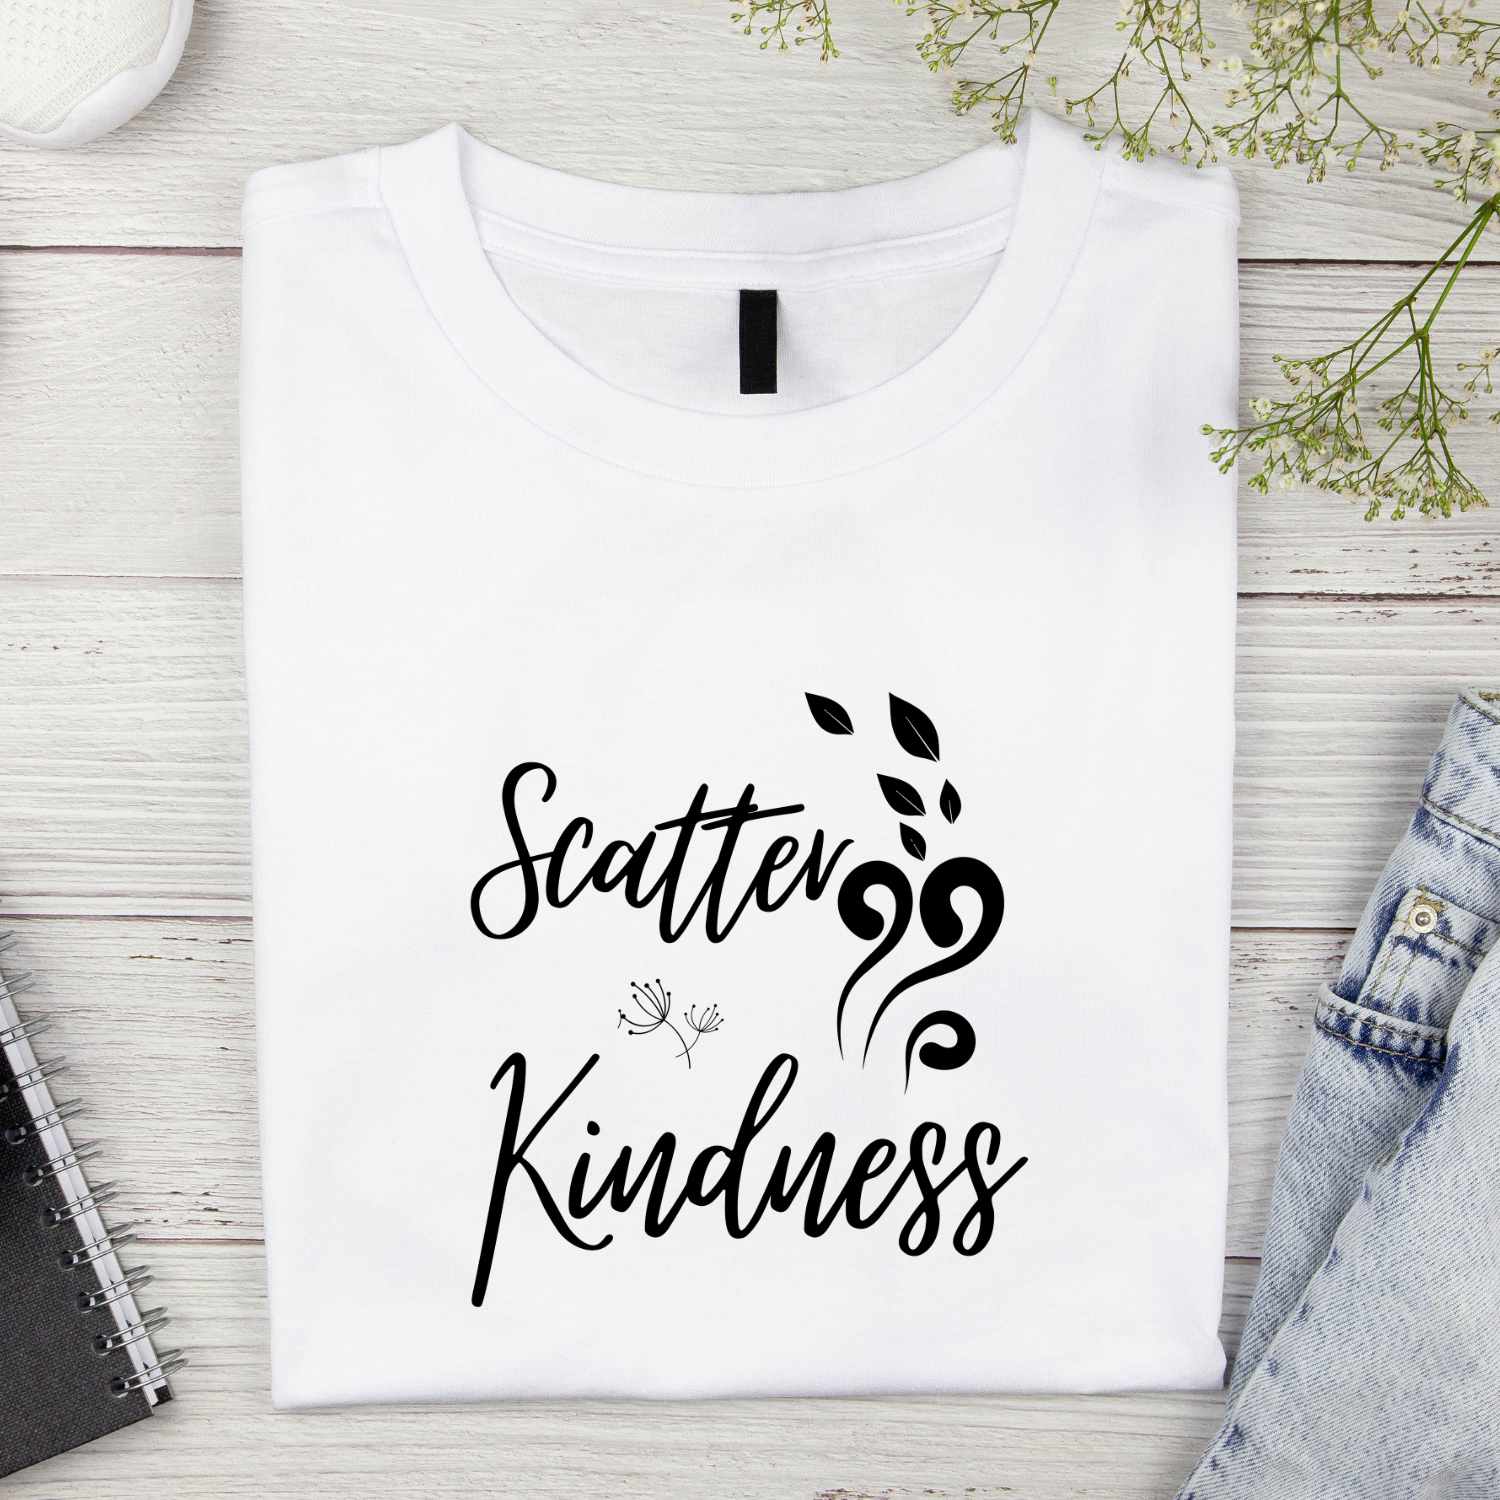 Scatter Kindness T-shirt Design